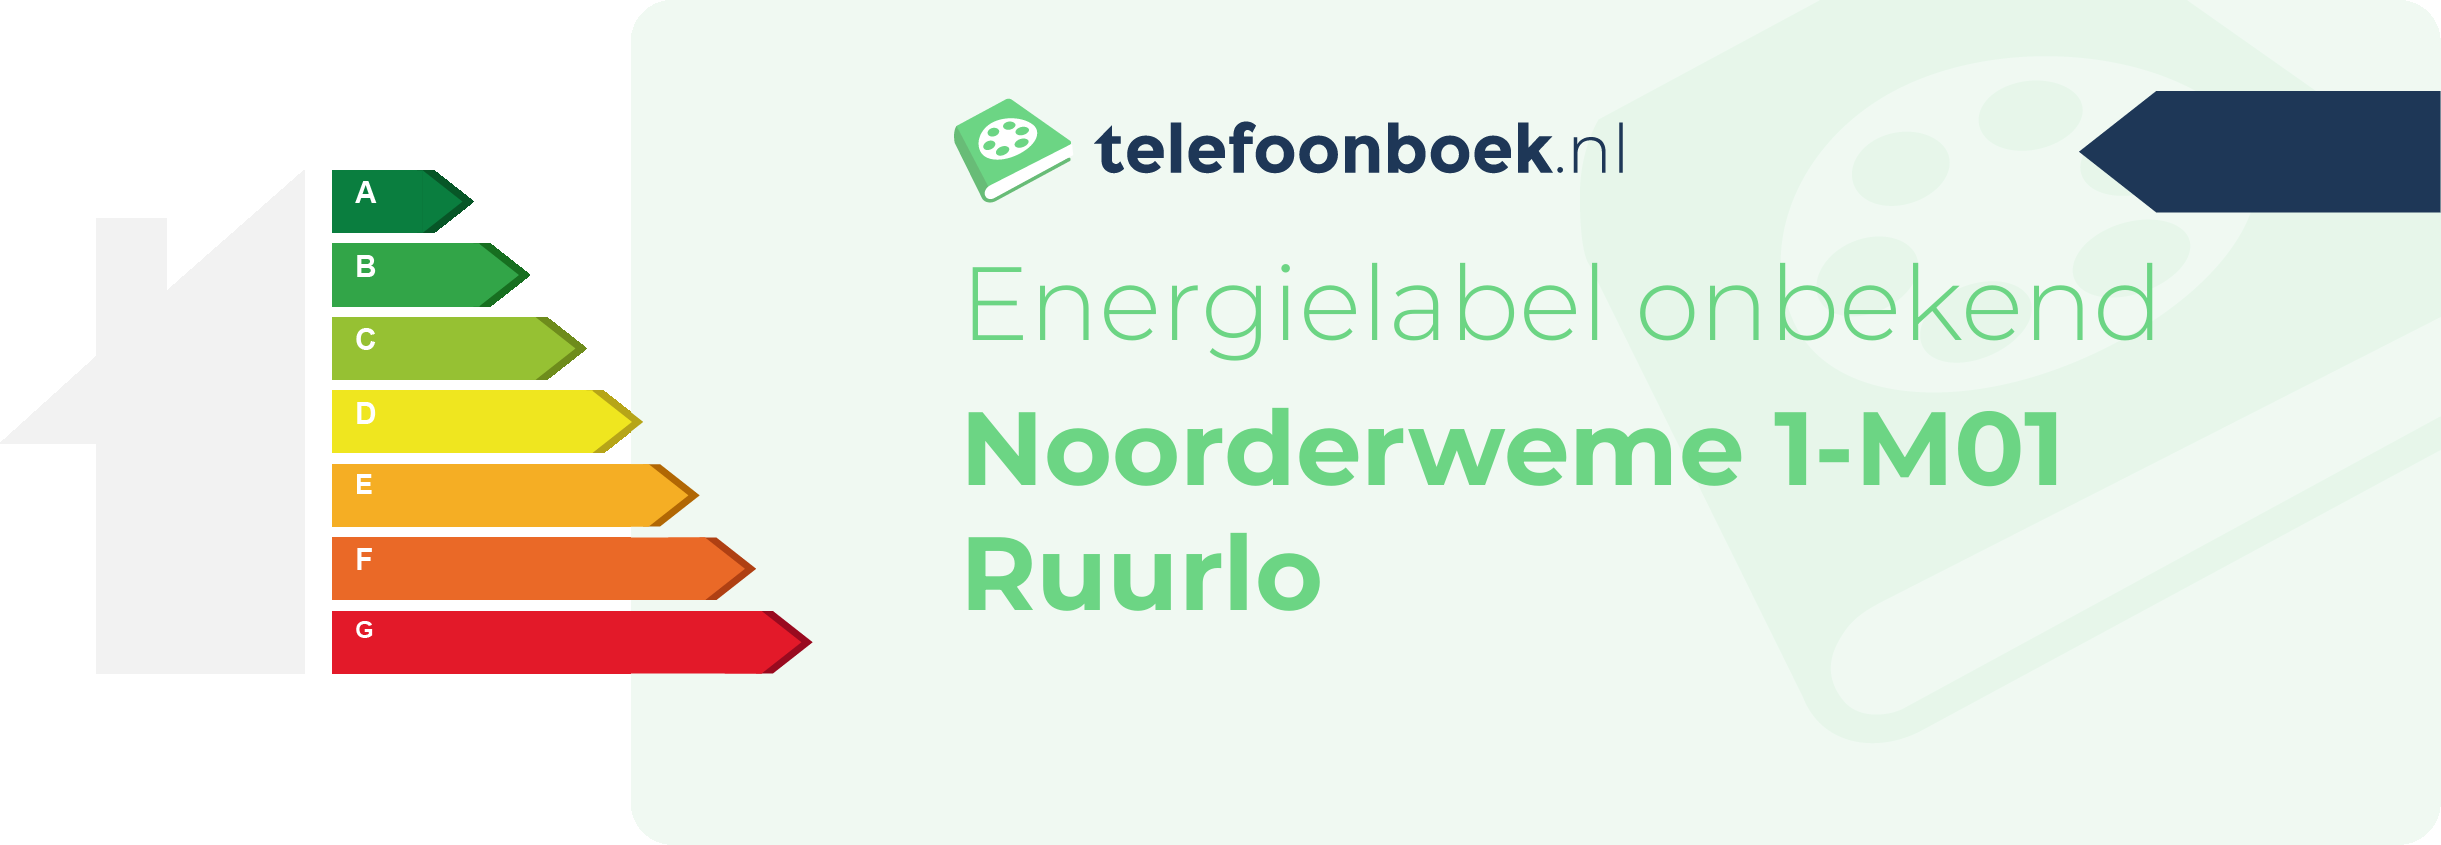 Energielabel Noorderweme 1-M01 Ruurlo